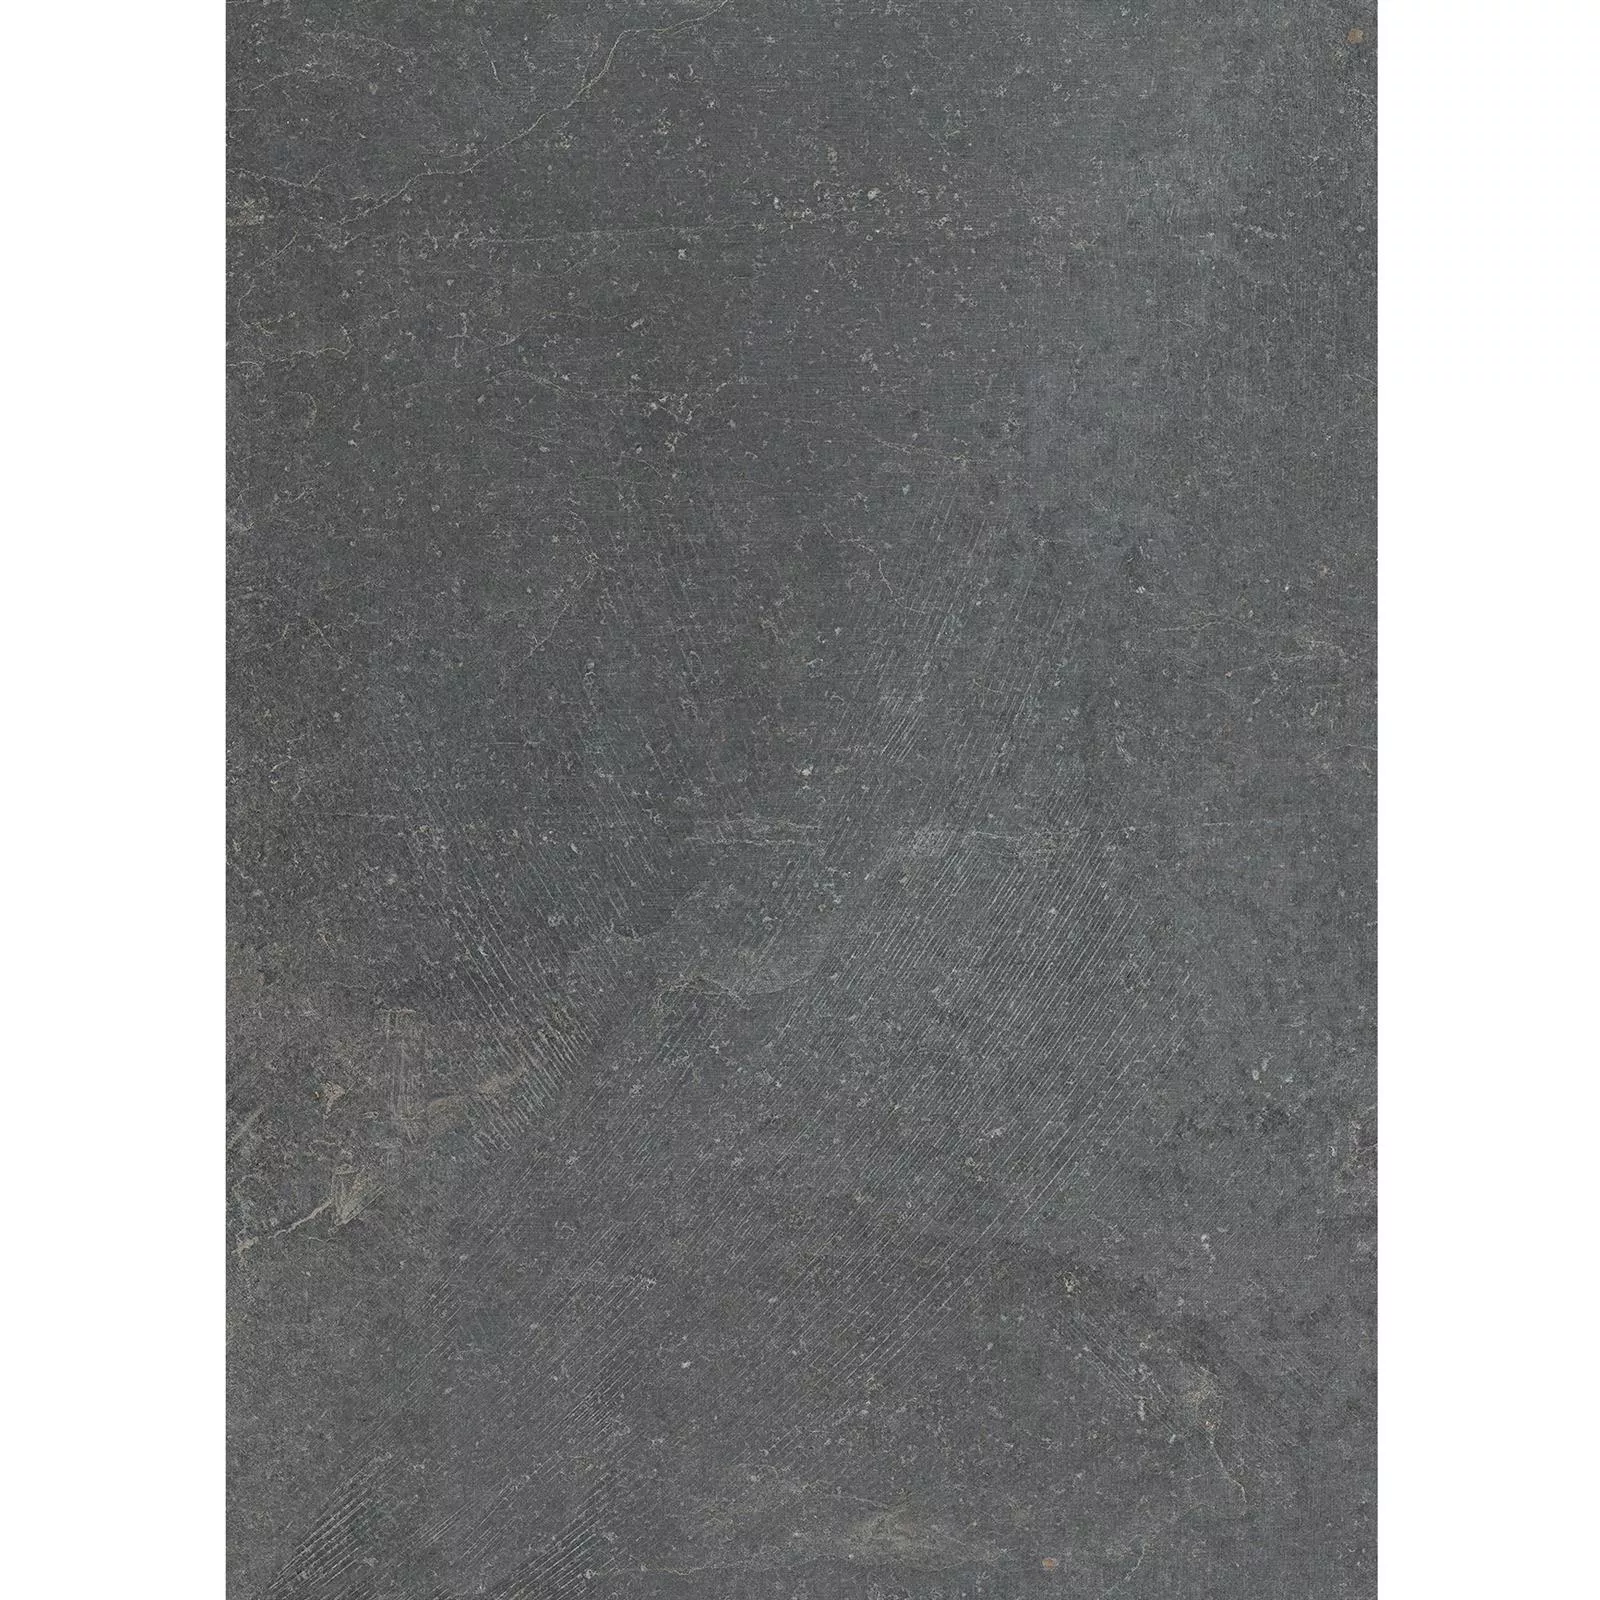 Podlahové Dlaždice Kámen Vzhled Horizon Antracitová 60x120cm